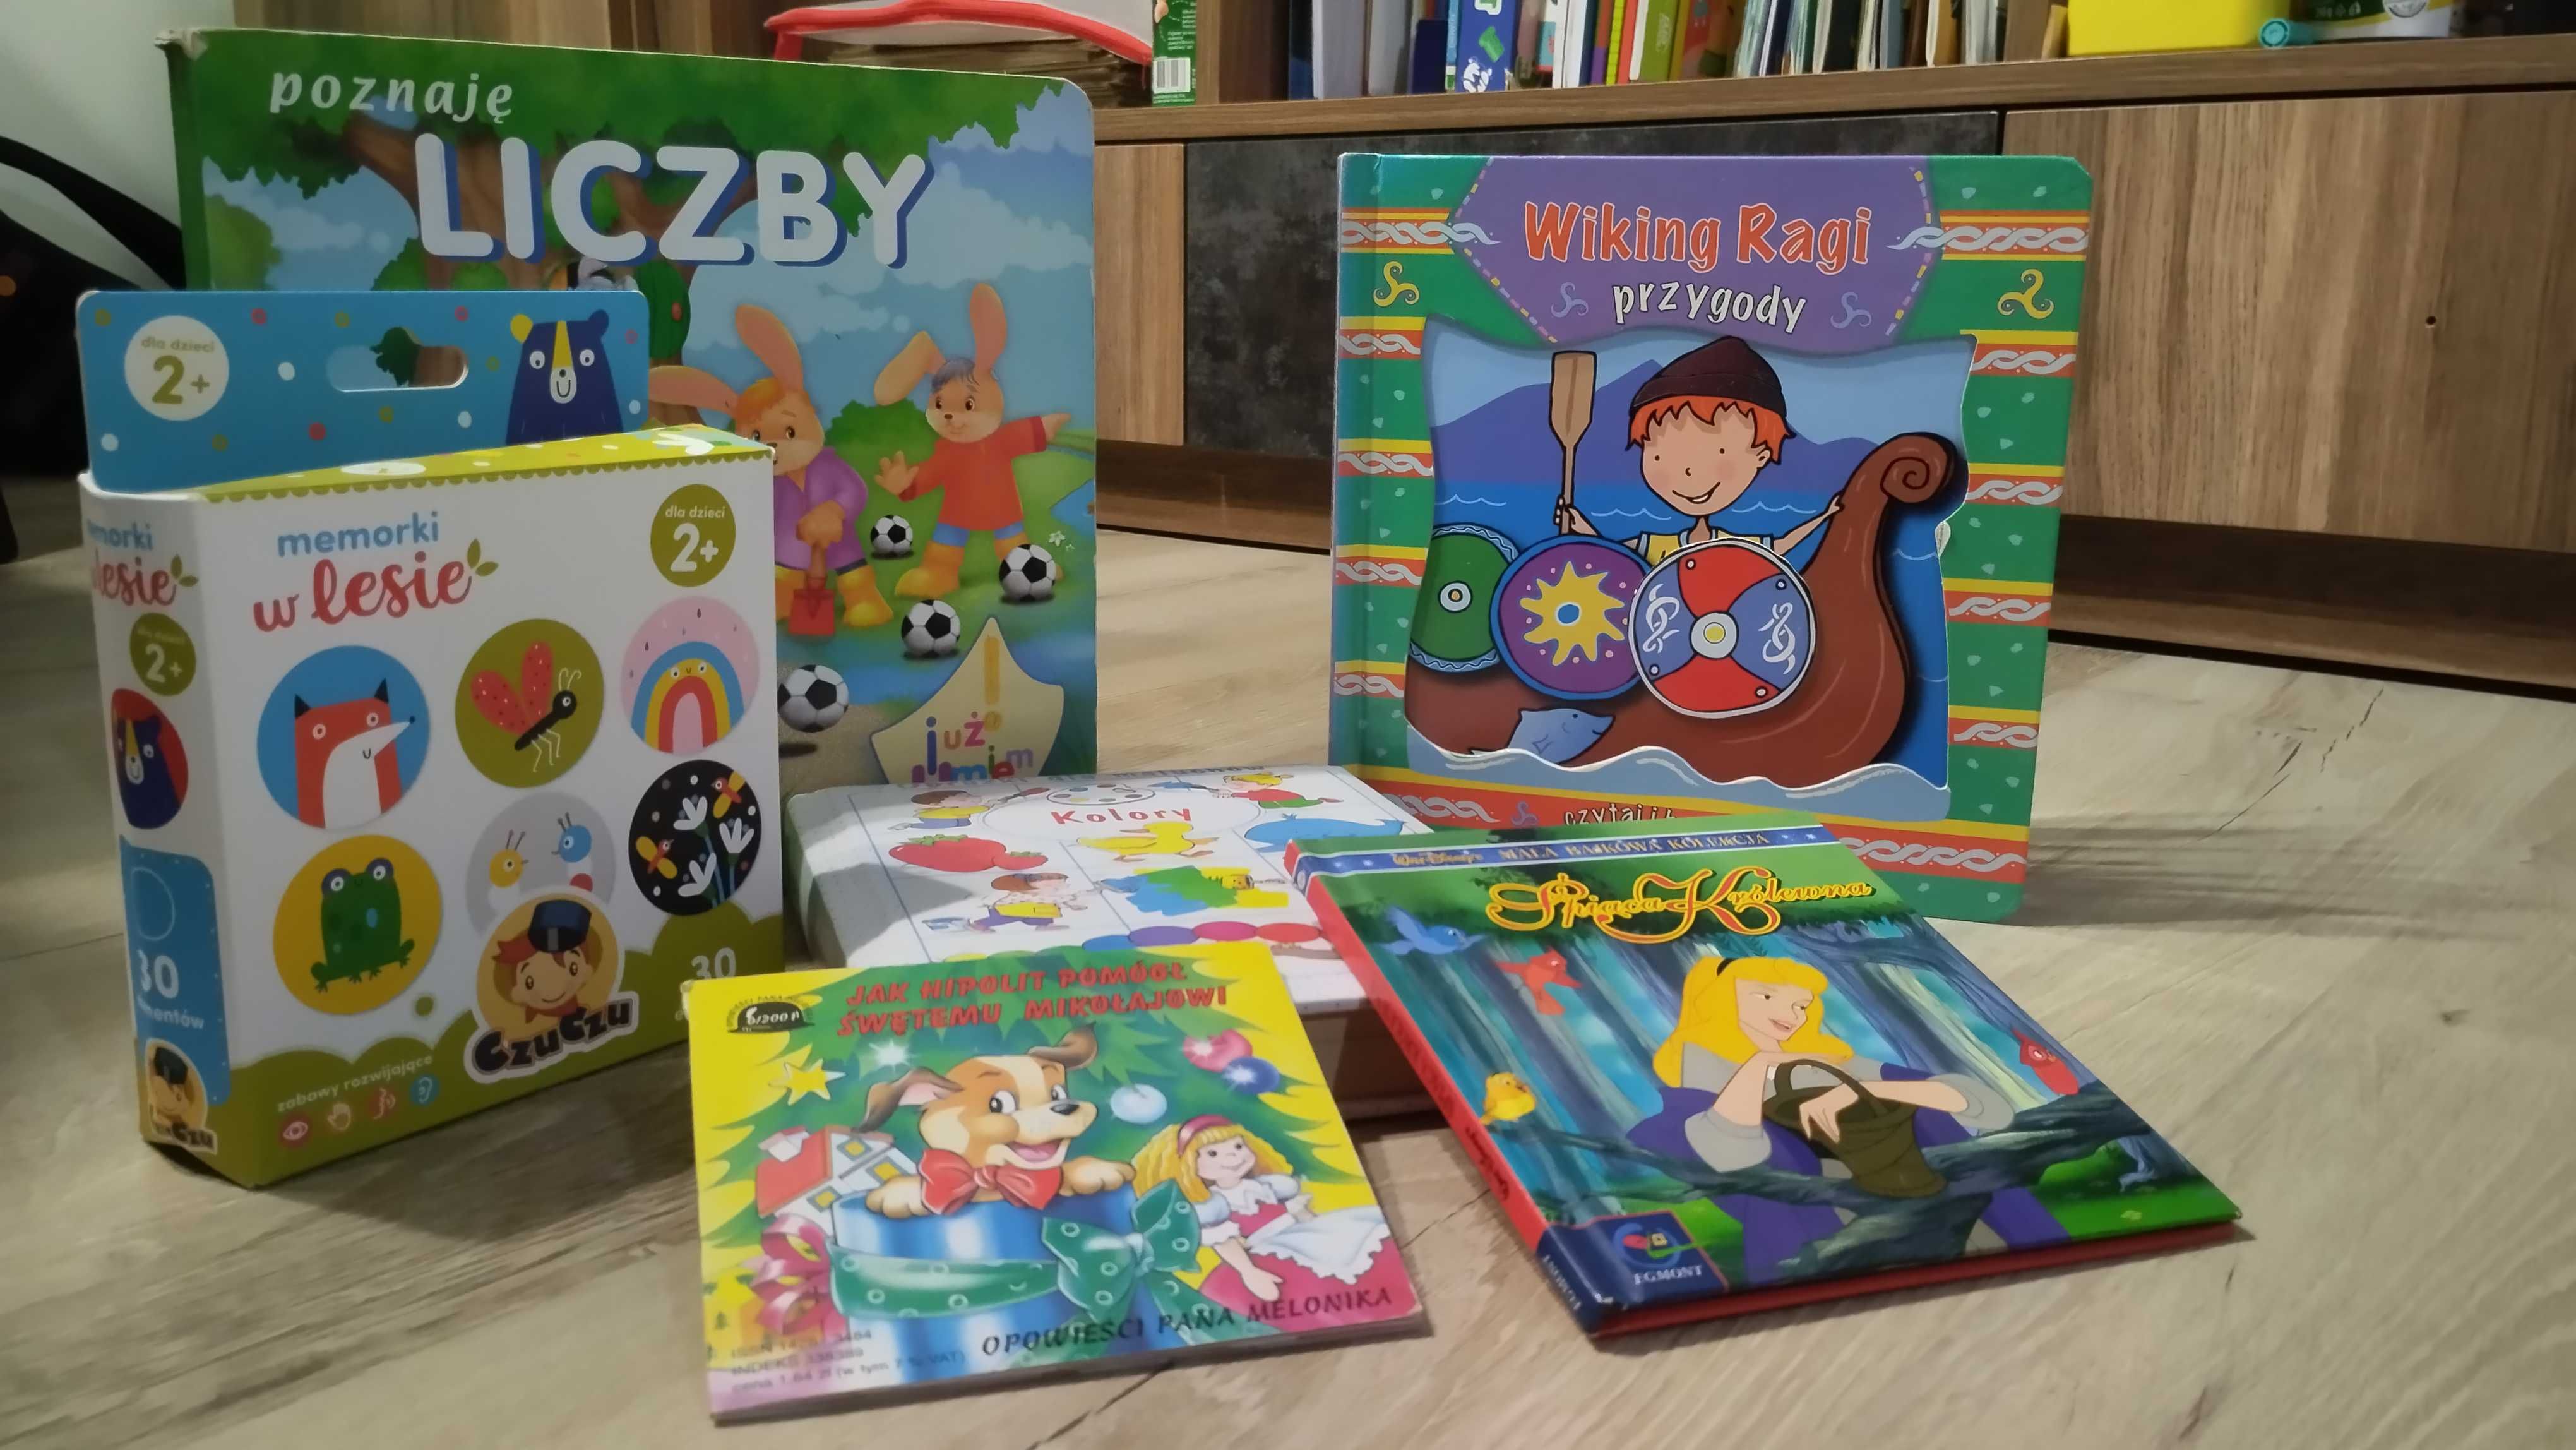 Książki dla dzieci - Liczby, kolory, memorki